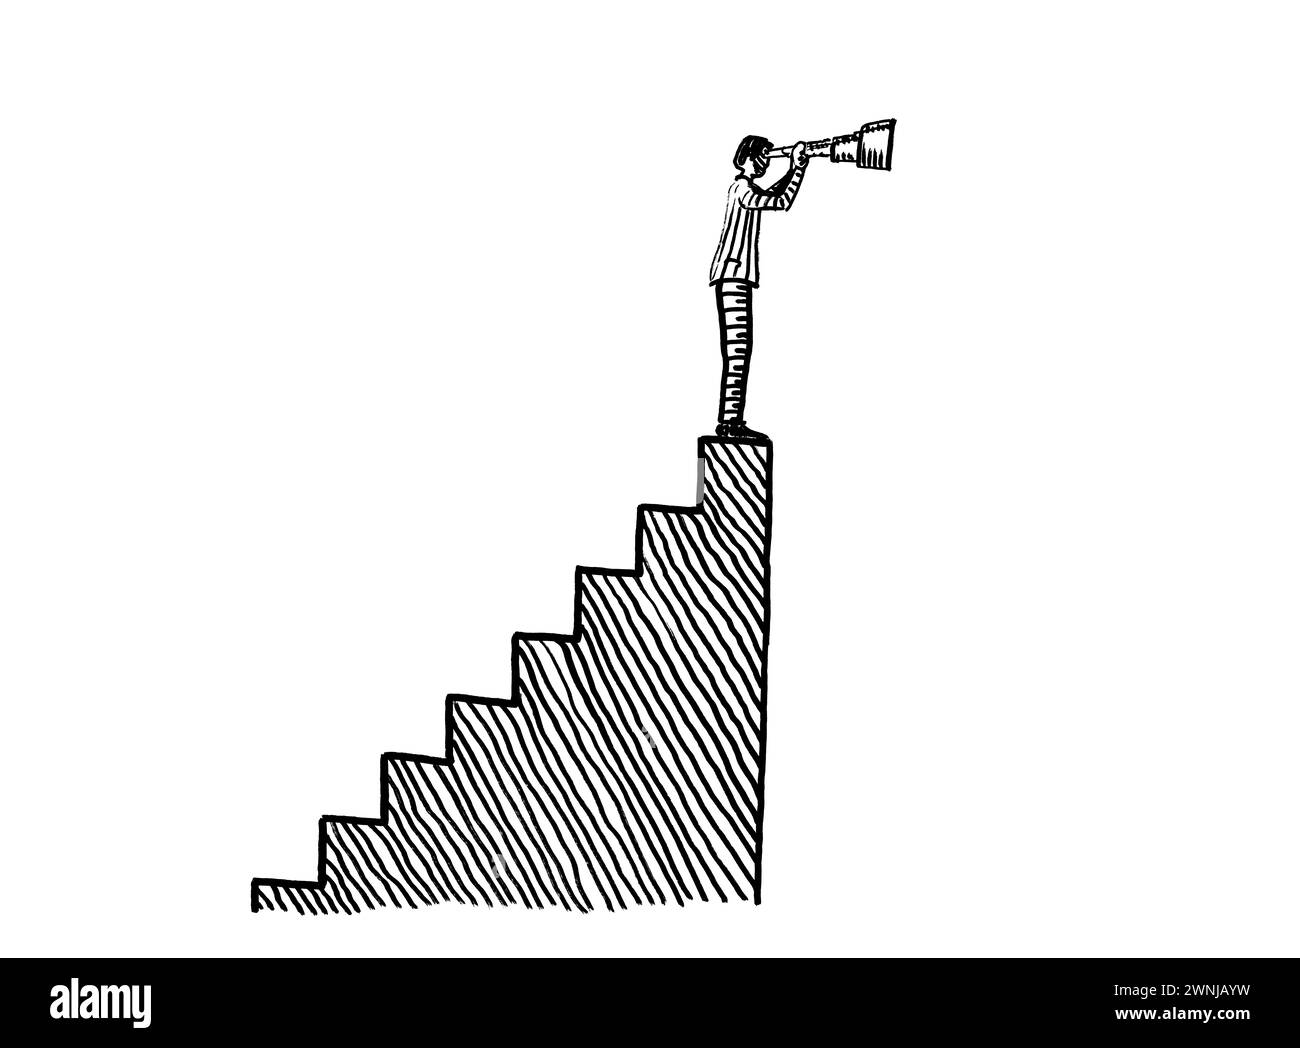 Freihändige Zeichnung eines Geschäftsmannes, der auf einer Treppe steht und durch ein Spyglass schaut. Metapher für Aspiration, Vision, Weitblick Stockfoto